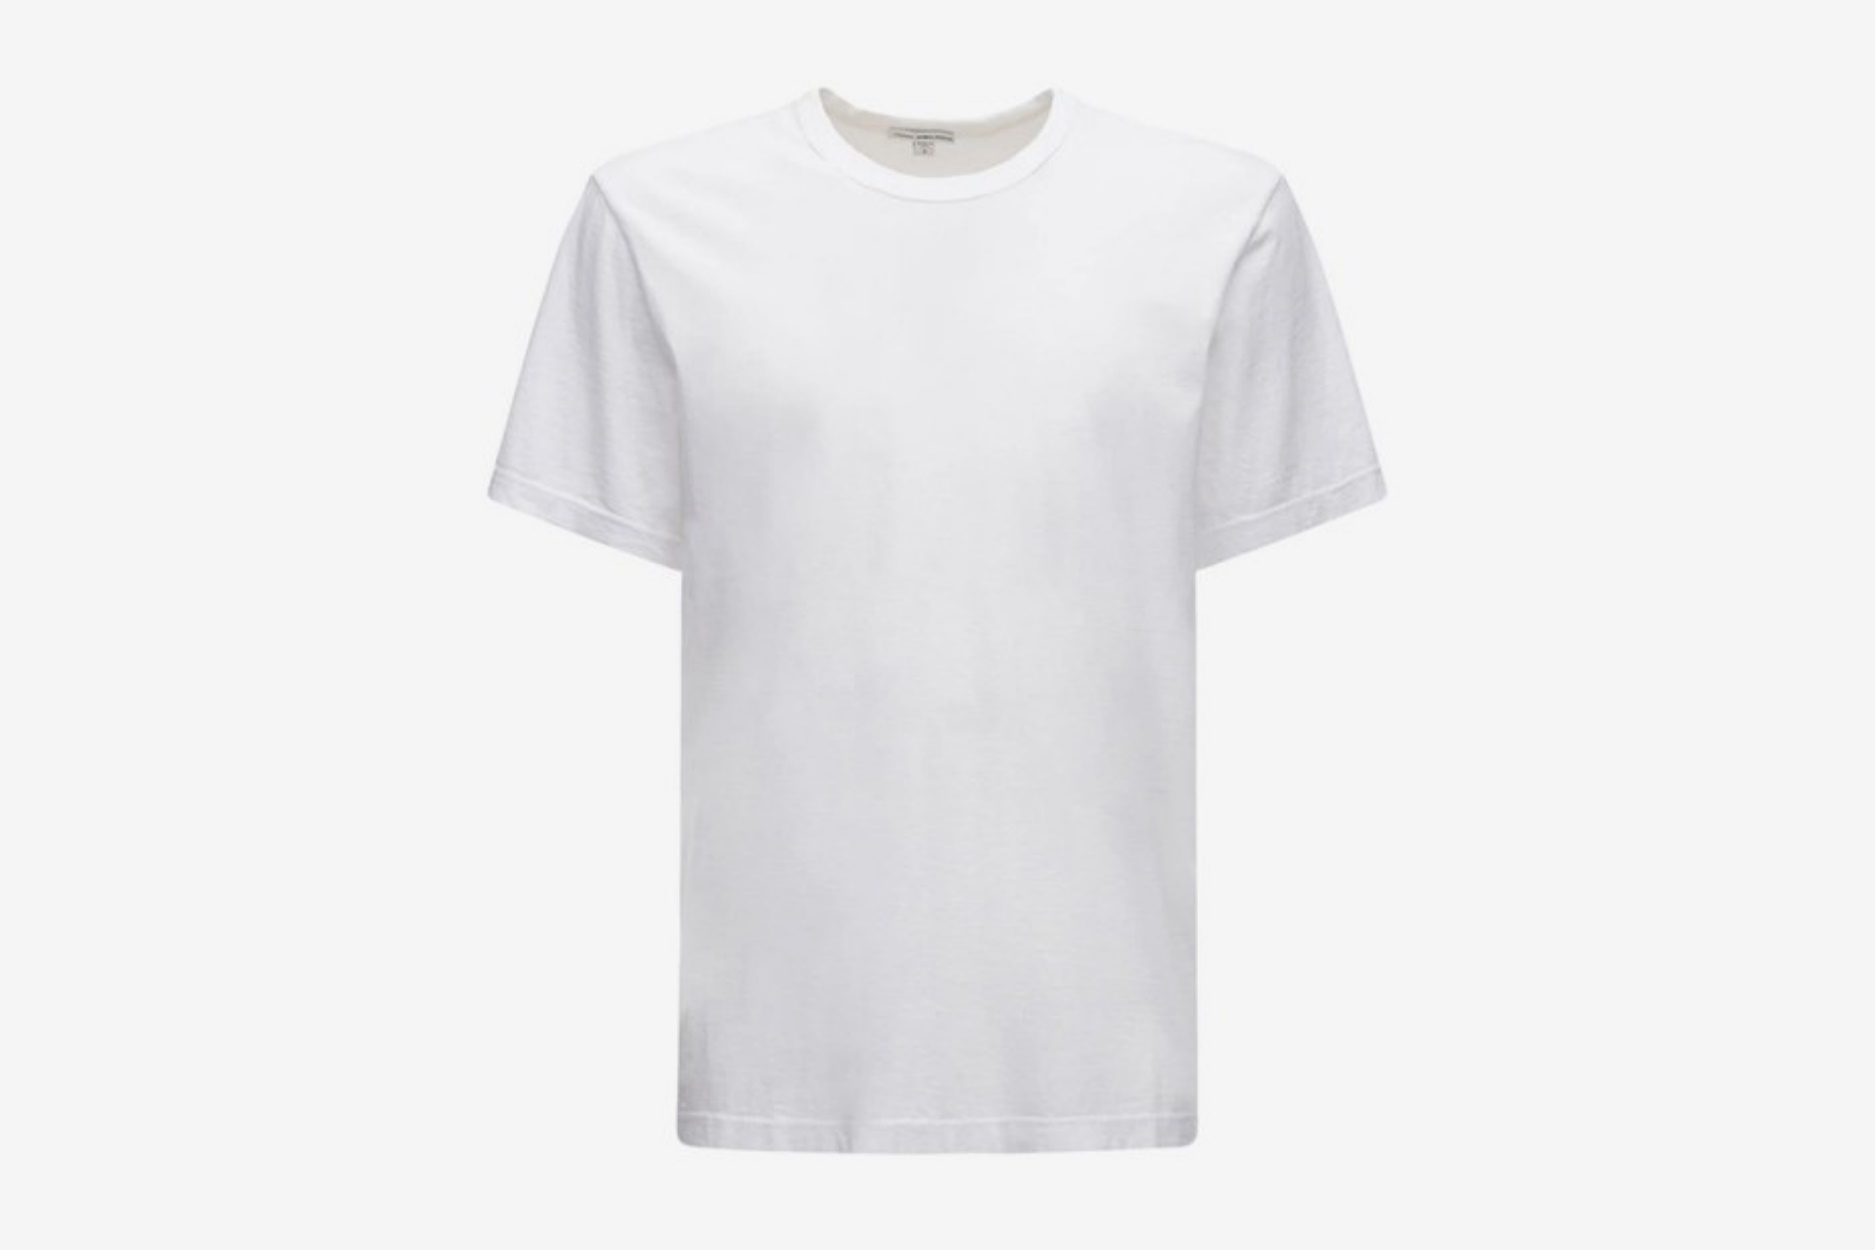 10 πολυτελή λευκά T-shirts που θα φοράς μέχρι το τέλος του καλοκαιριού